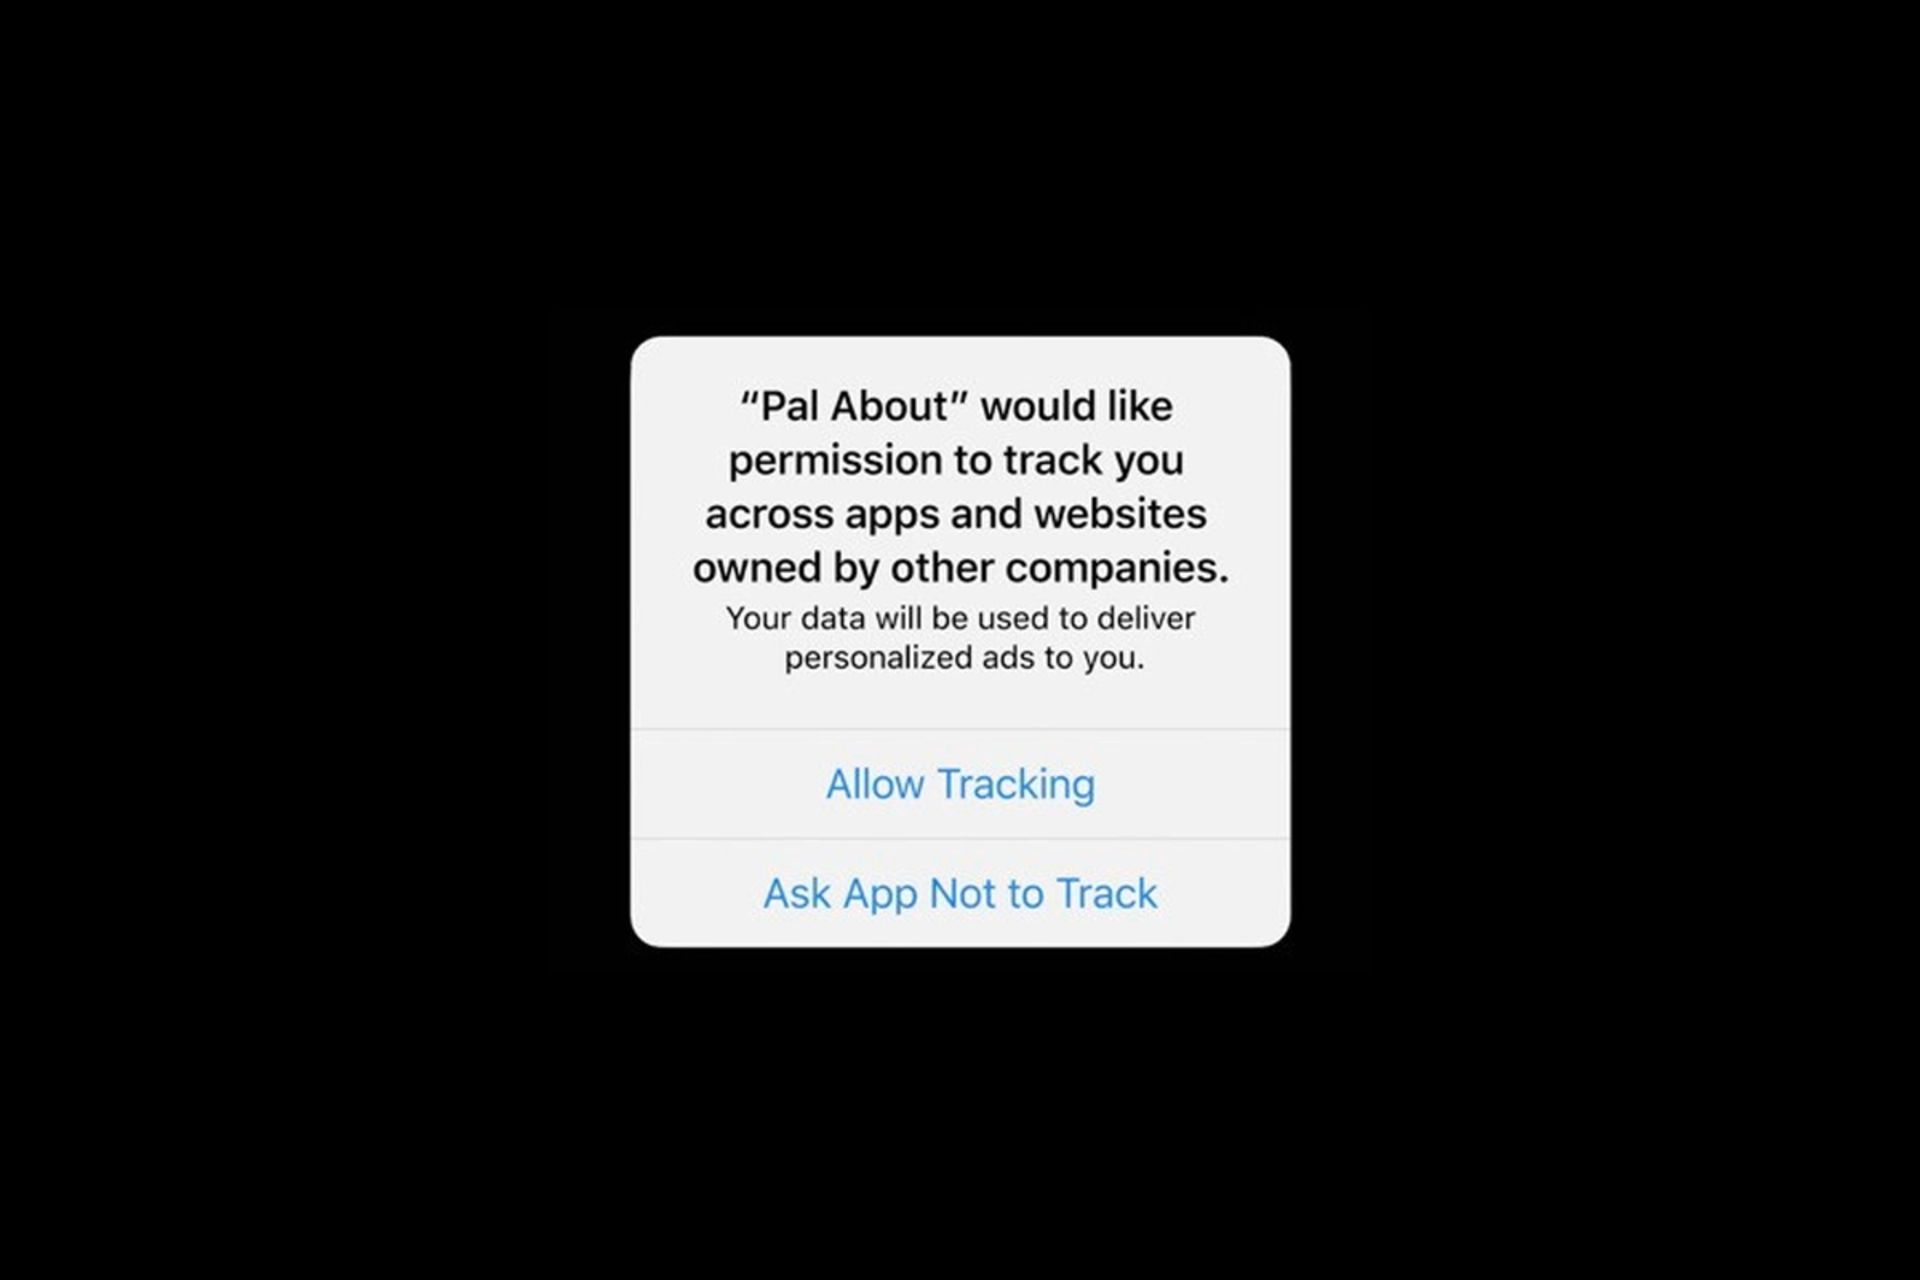 مرجع متخصصين ايران پيام شناور iOS 14 اپل در زمينه رهگيري فعاليت هاي متخصص براي تبليغات